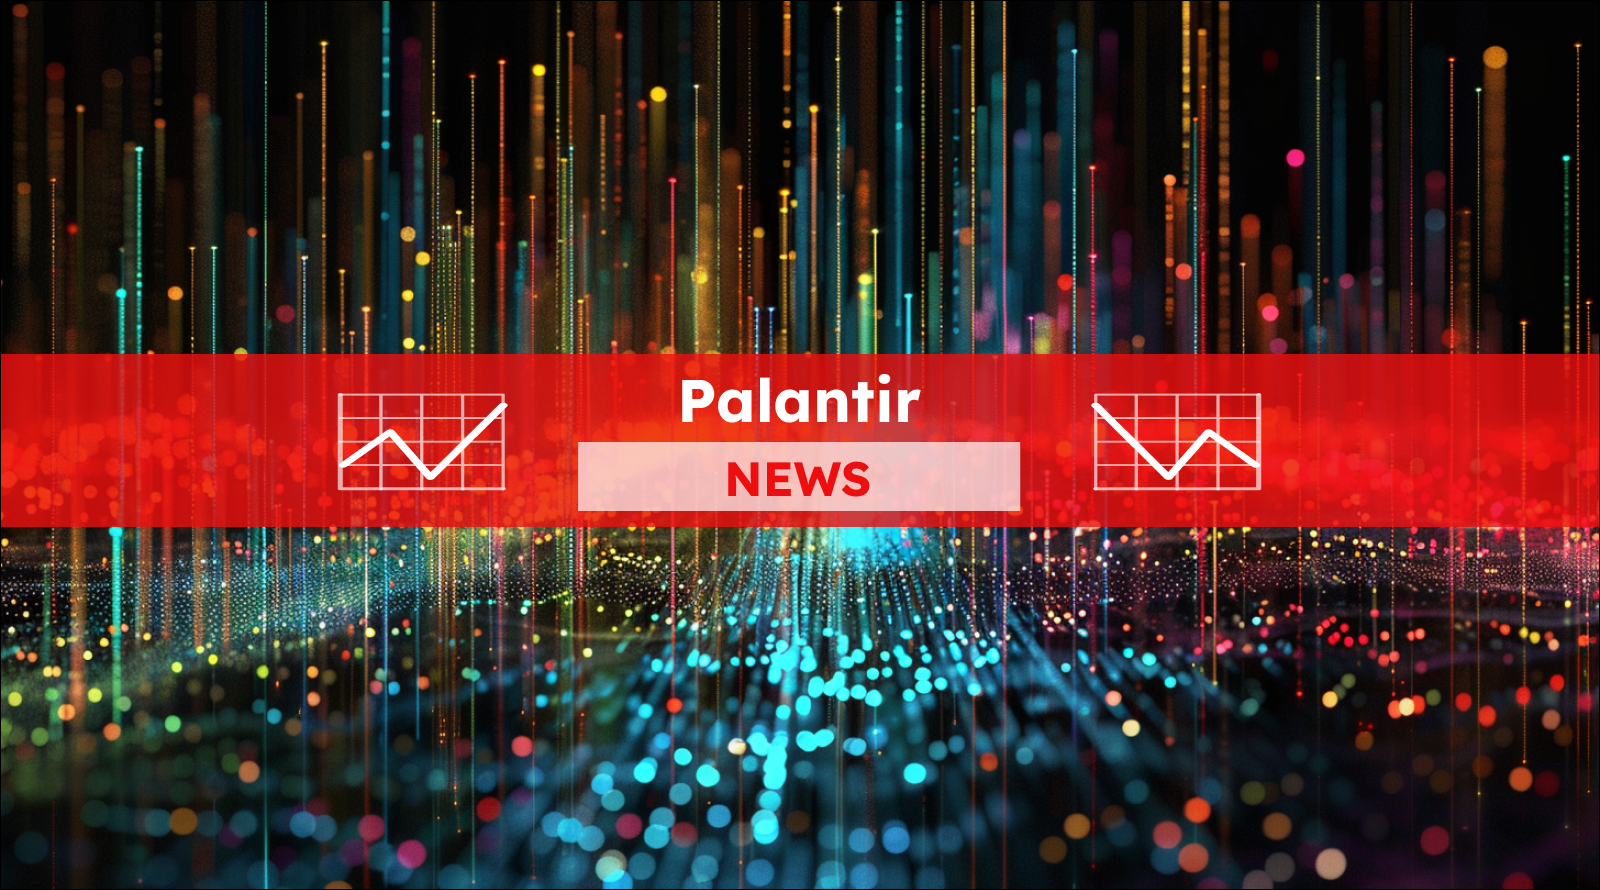 Eine dynamische digitale Darstellung mit bunten Lichtlinien und der Aufschrift Palantir NEWS in einem roten Banner.